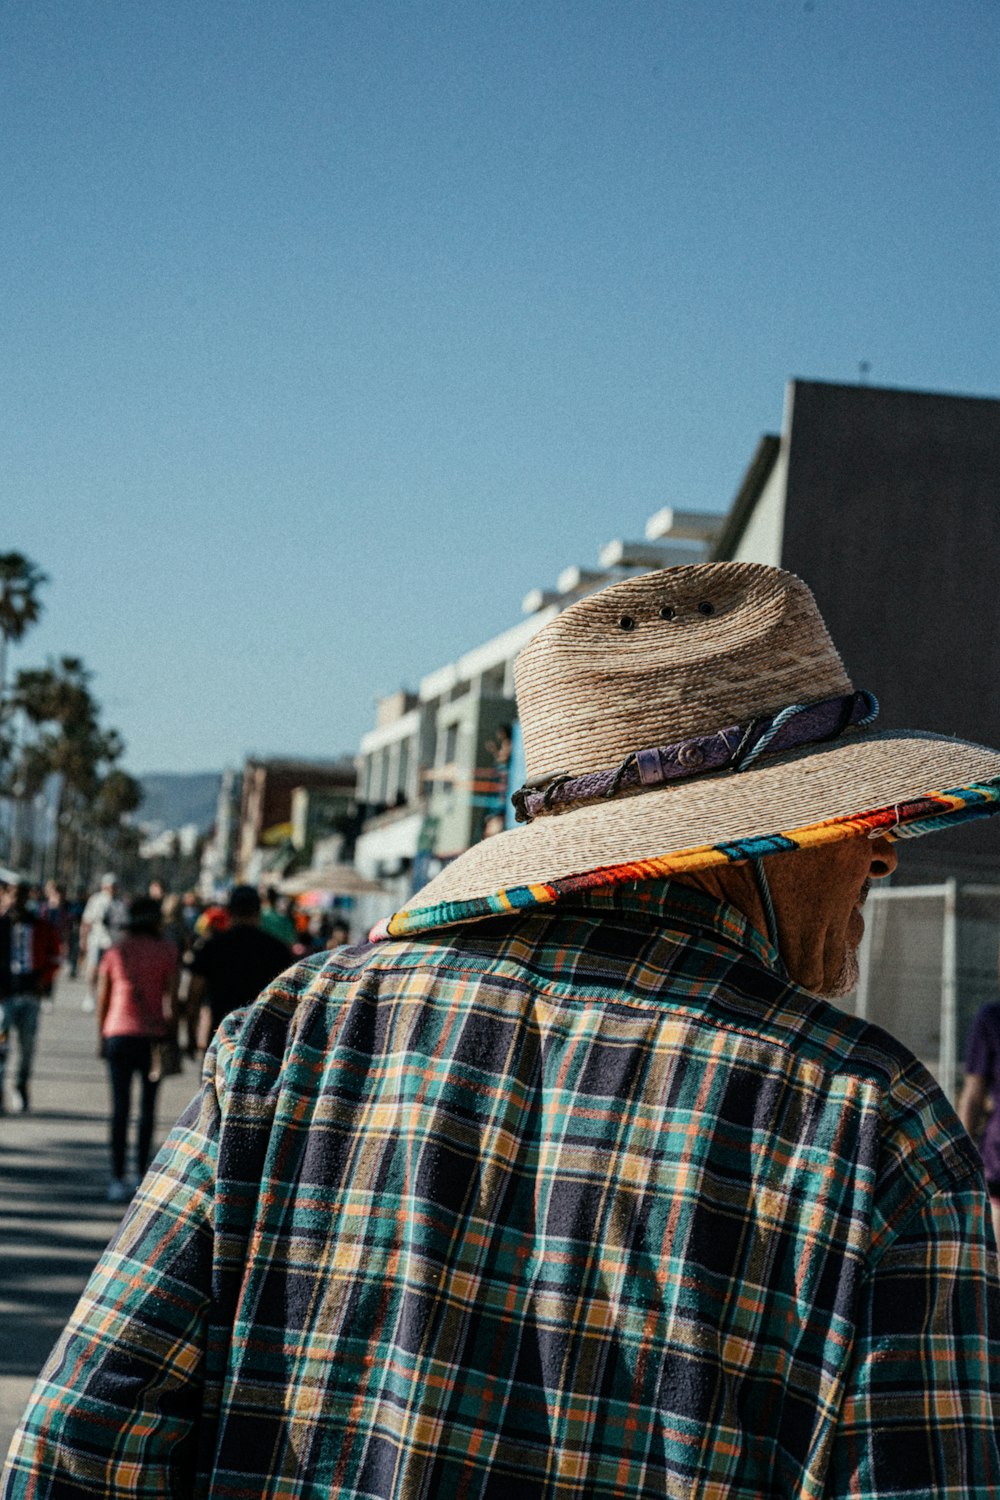 a man wearing a hat walking down a street